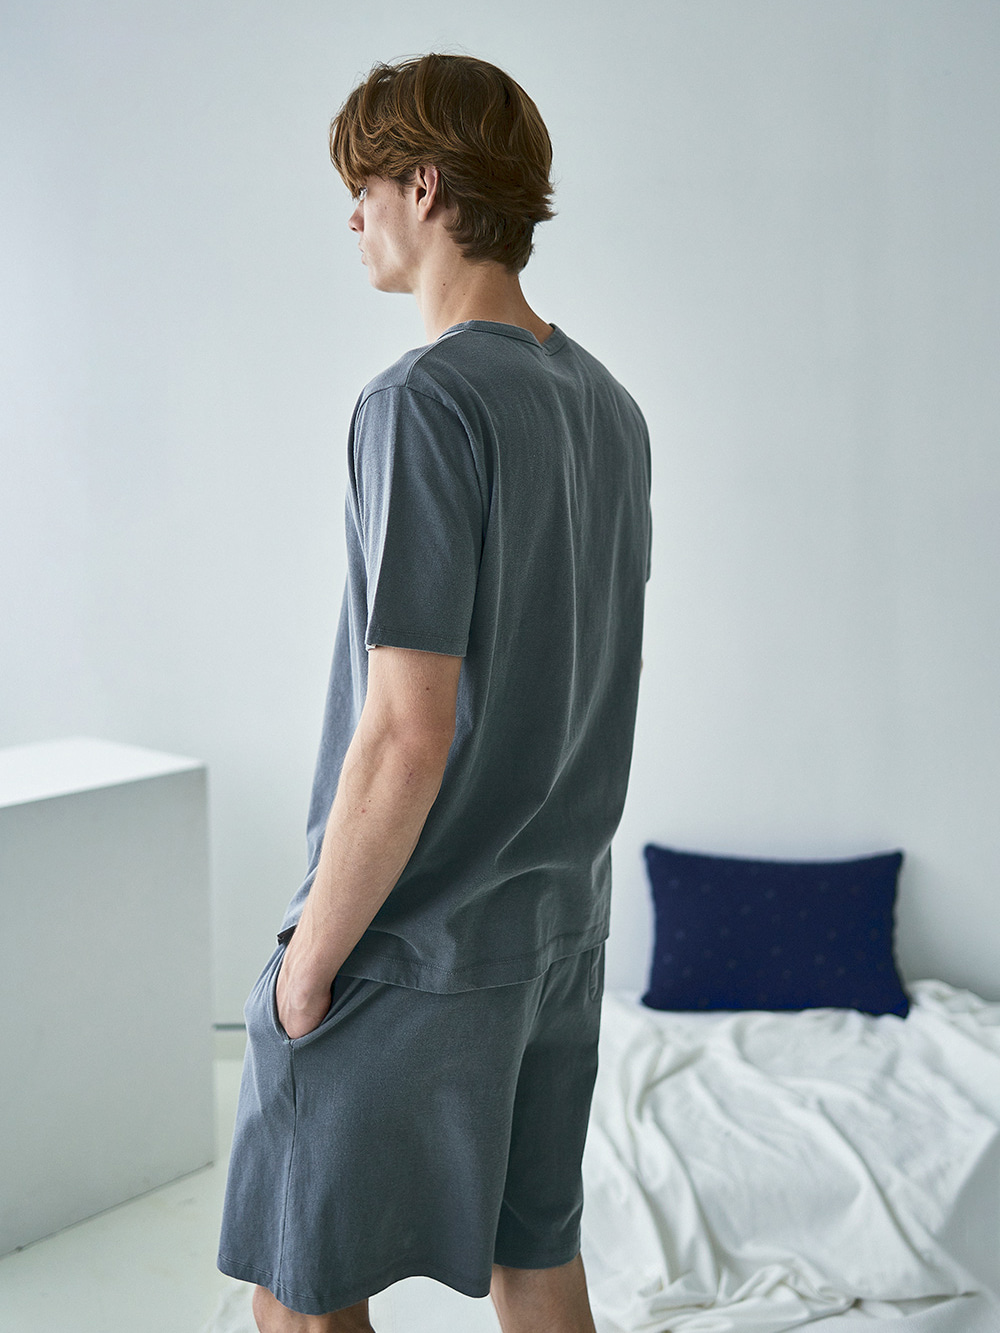 코즈넉 KOZNOK - 피그먼트 조거팬츠 남자 잠옷 파자마 홈웨어 남성 라운지웨어 잠옷반바지